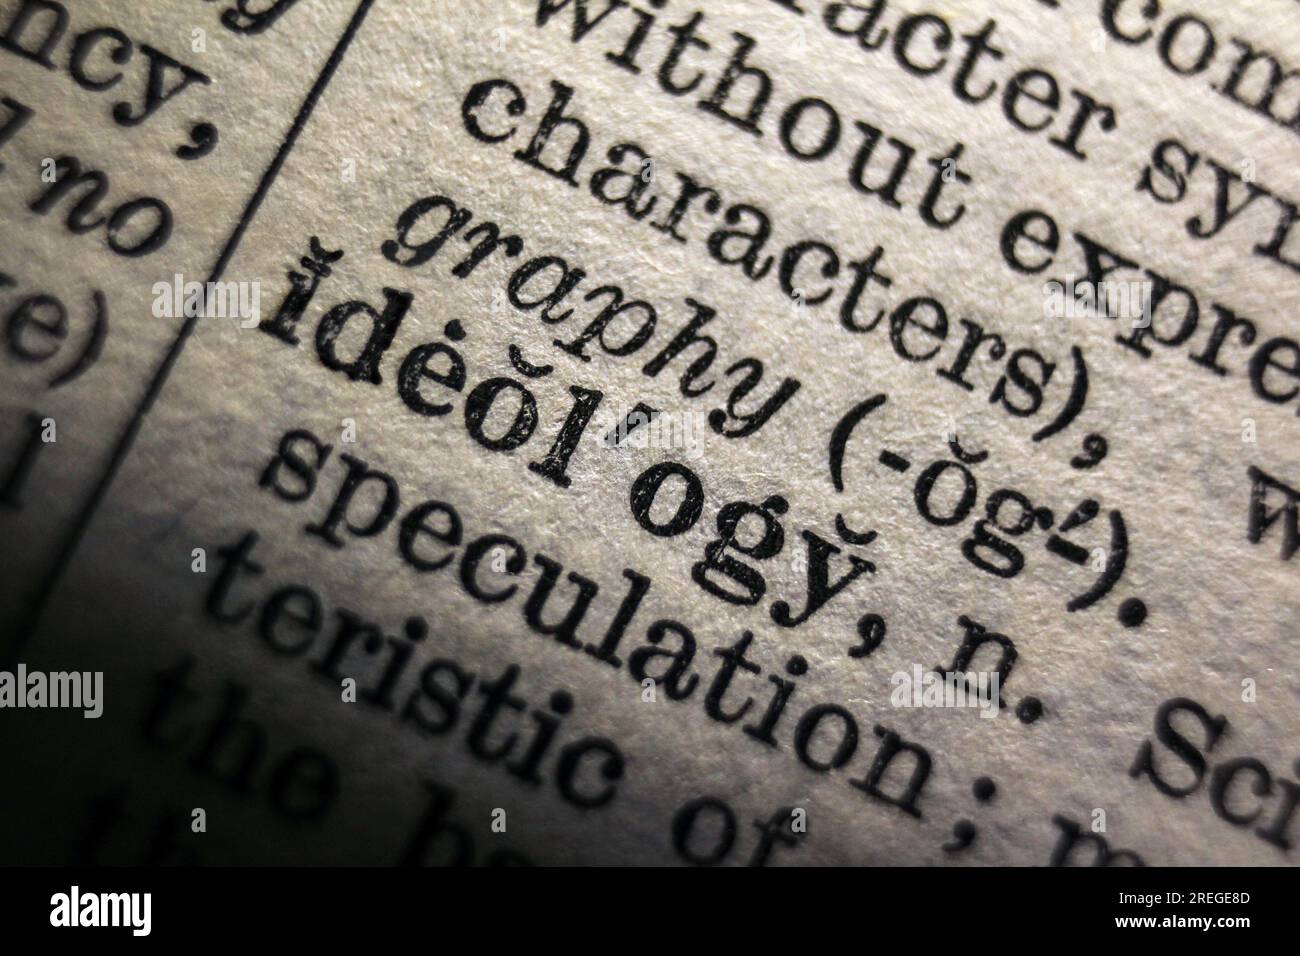 Definizione dell'ideologia delle parole nella pagina del dizionario, primo piano Foto Stock